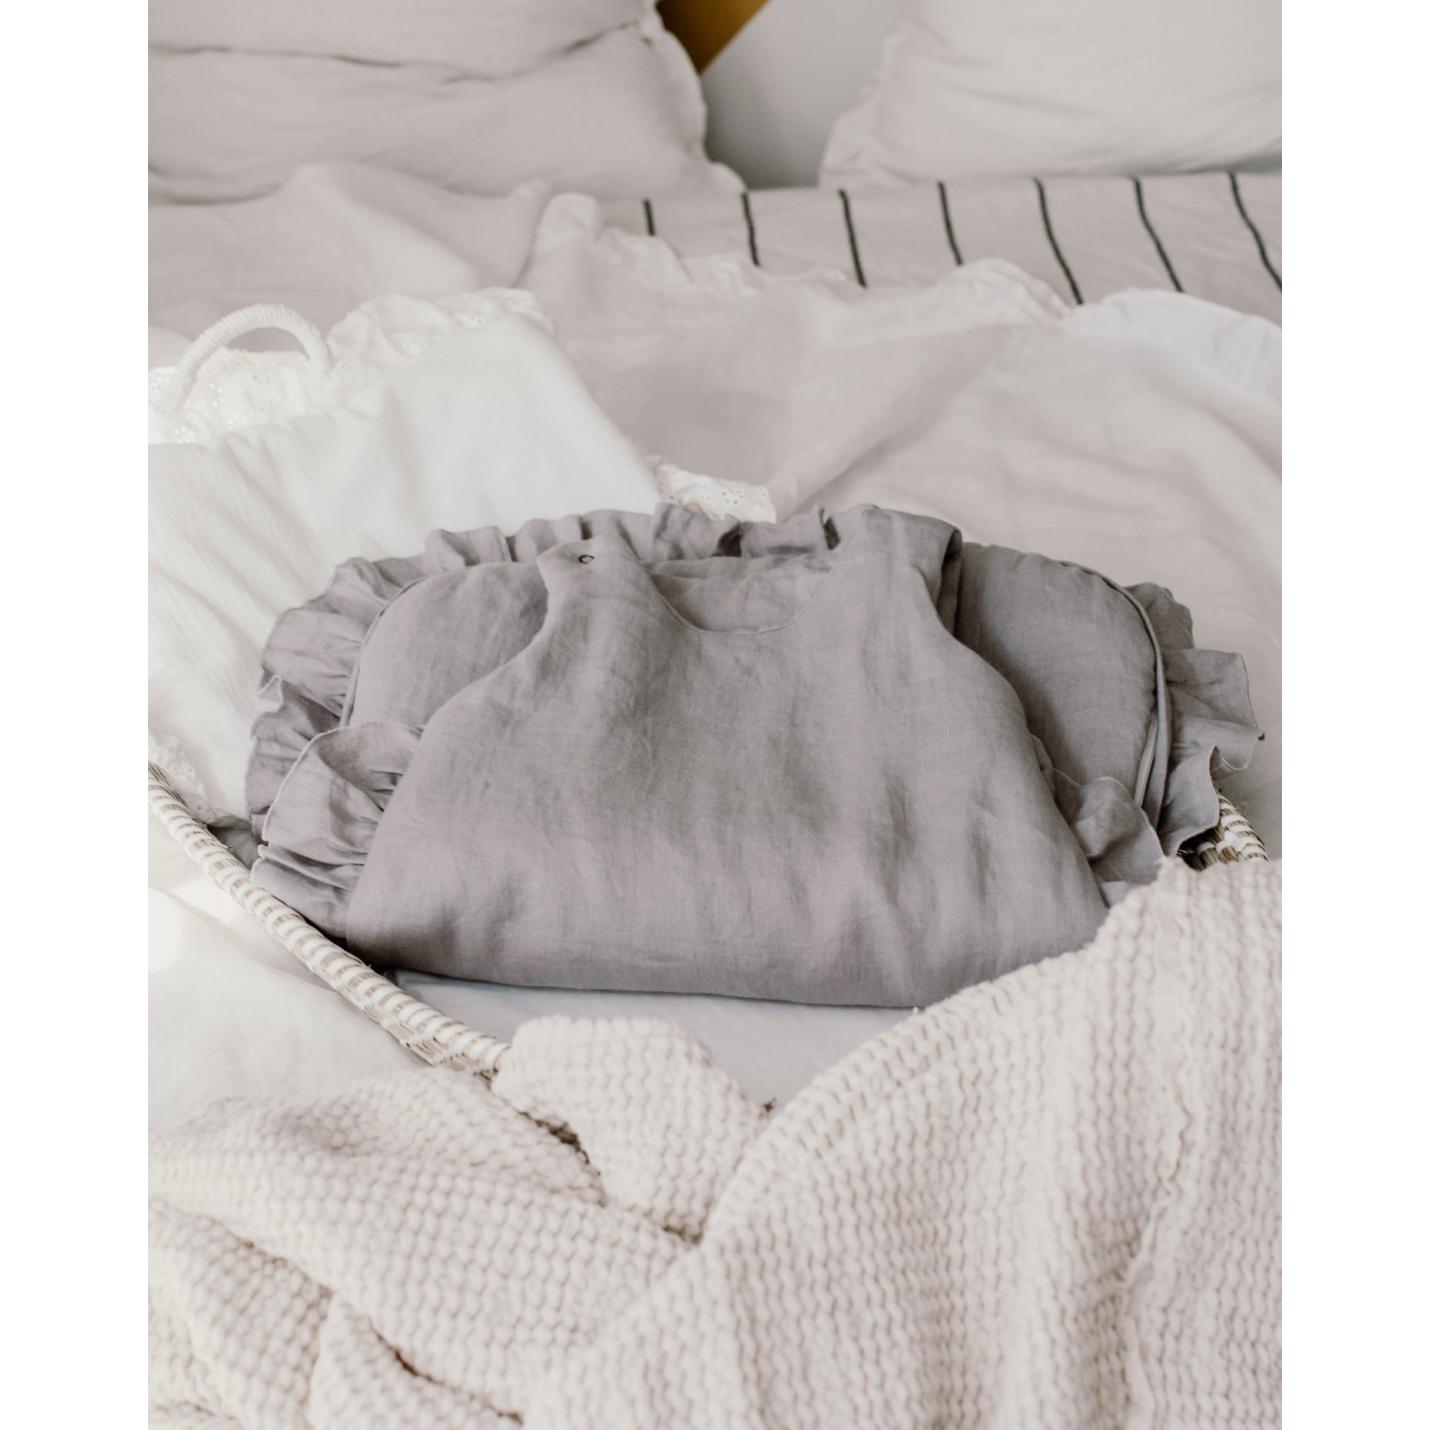 Ruffled sleepingbag grey